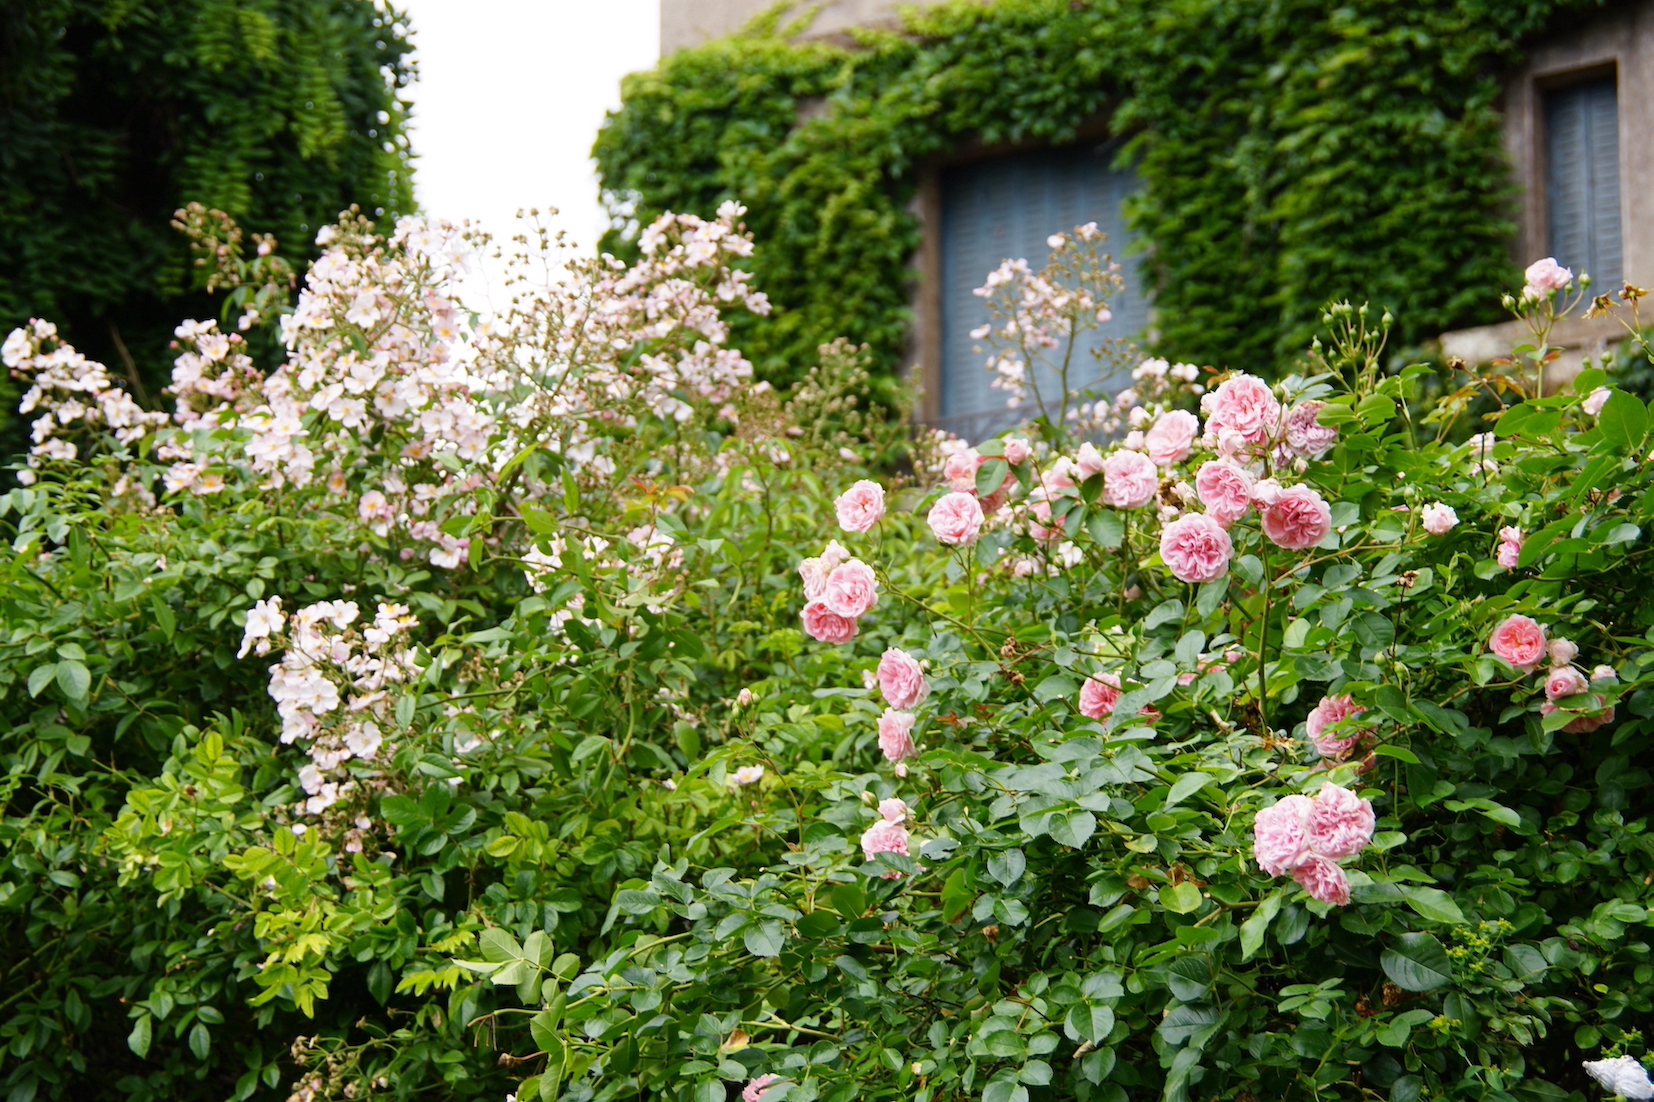 Les roses en cuisines pour nous rappeler la beauté de notre jardin aux beaux jours